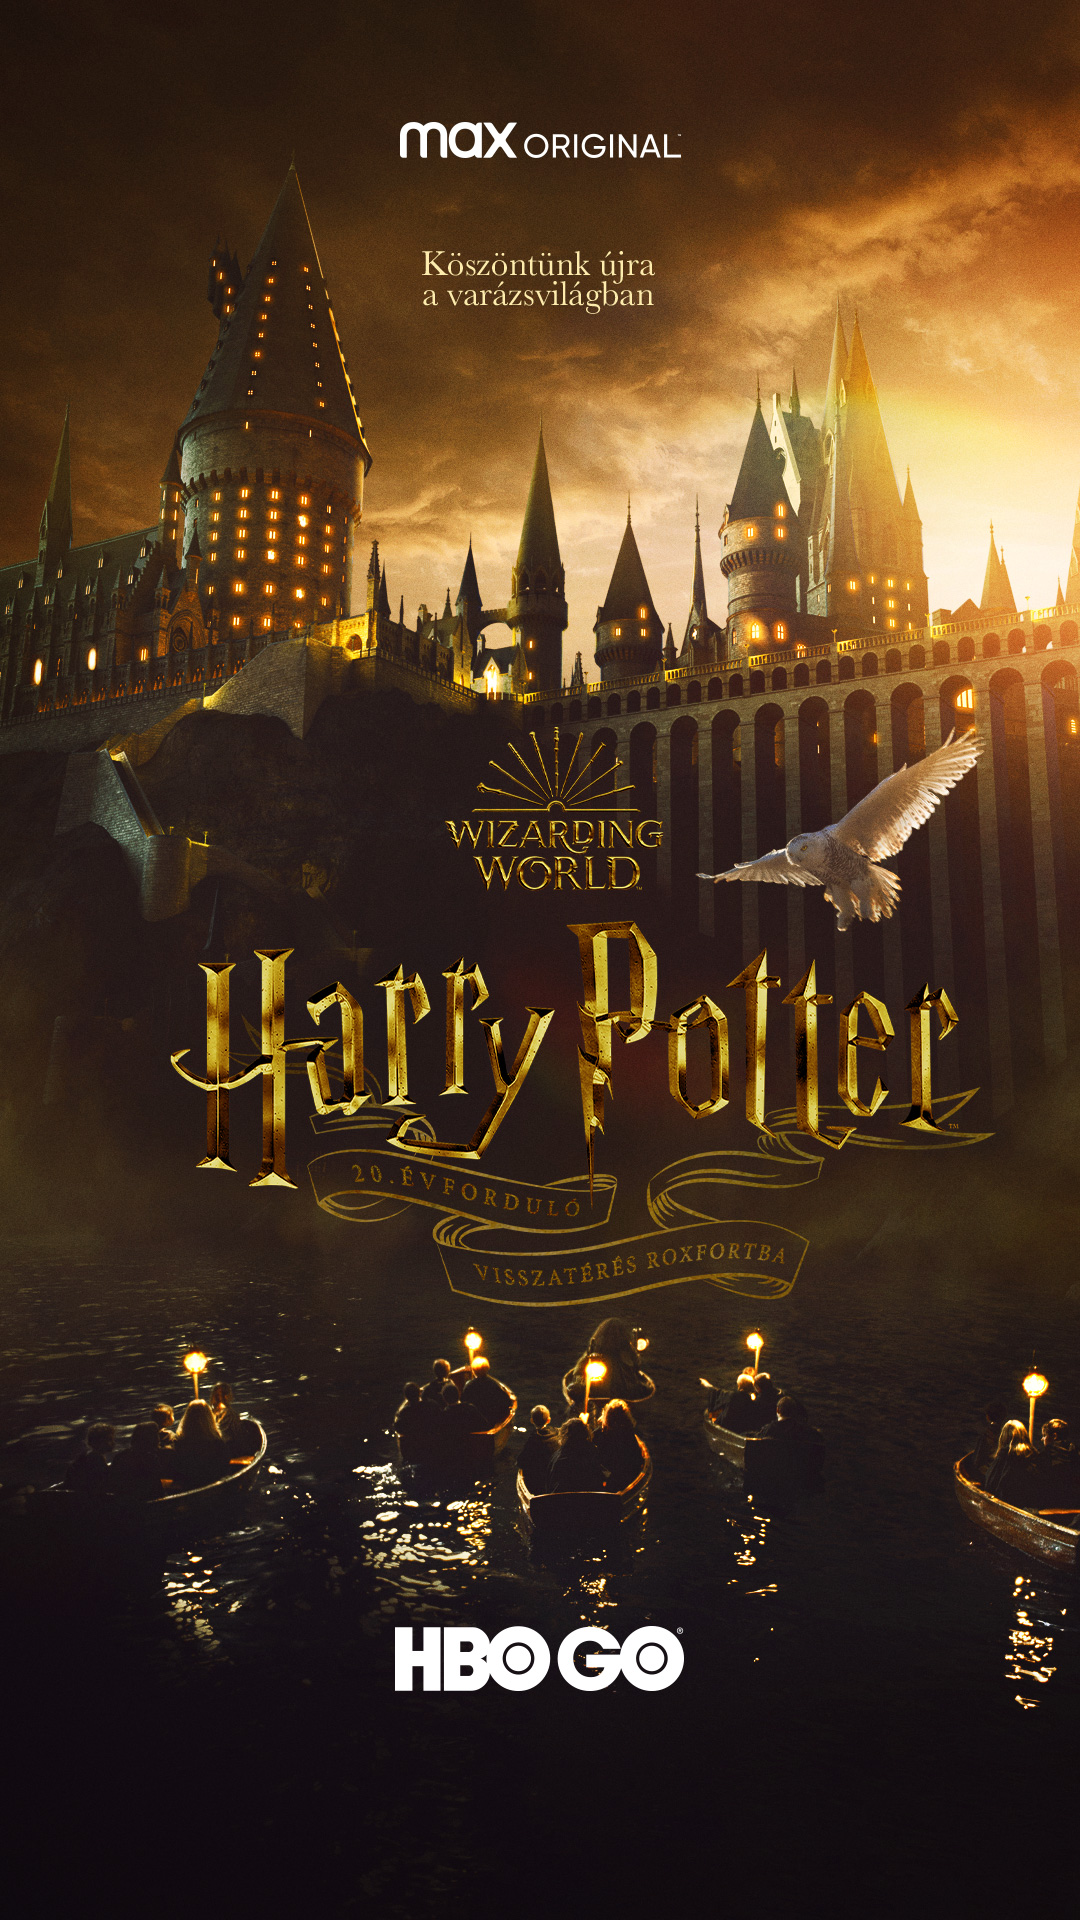 Harry Potter 20. évforduló: Visszatérés Roxfortba